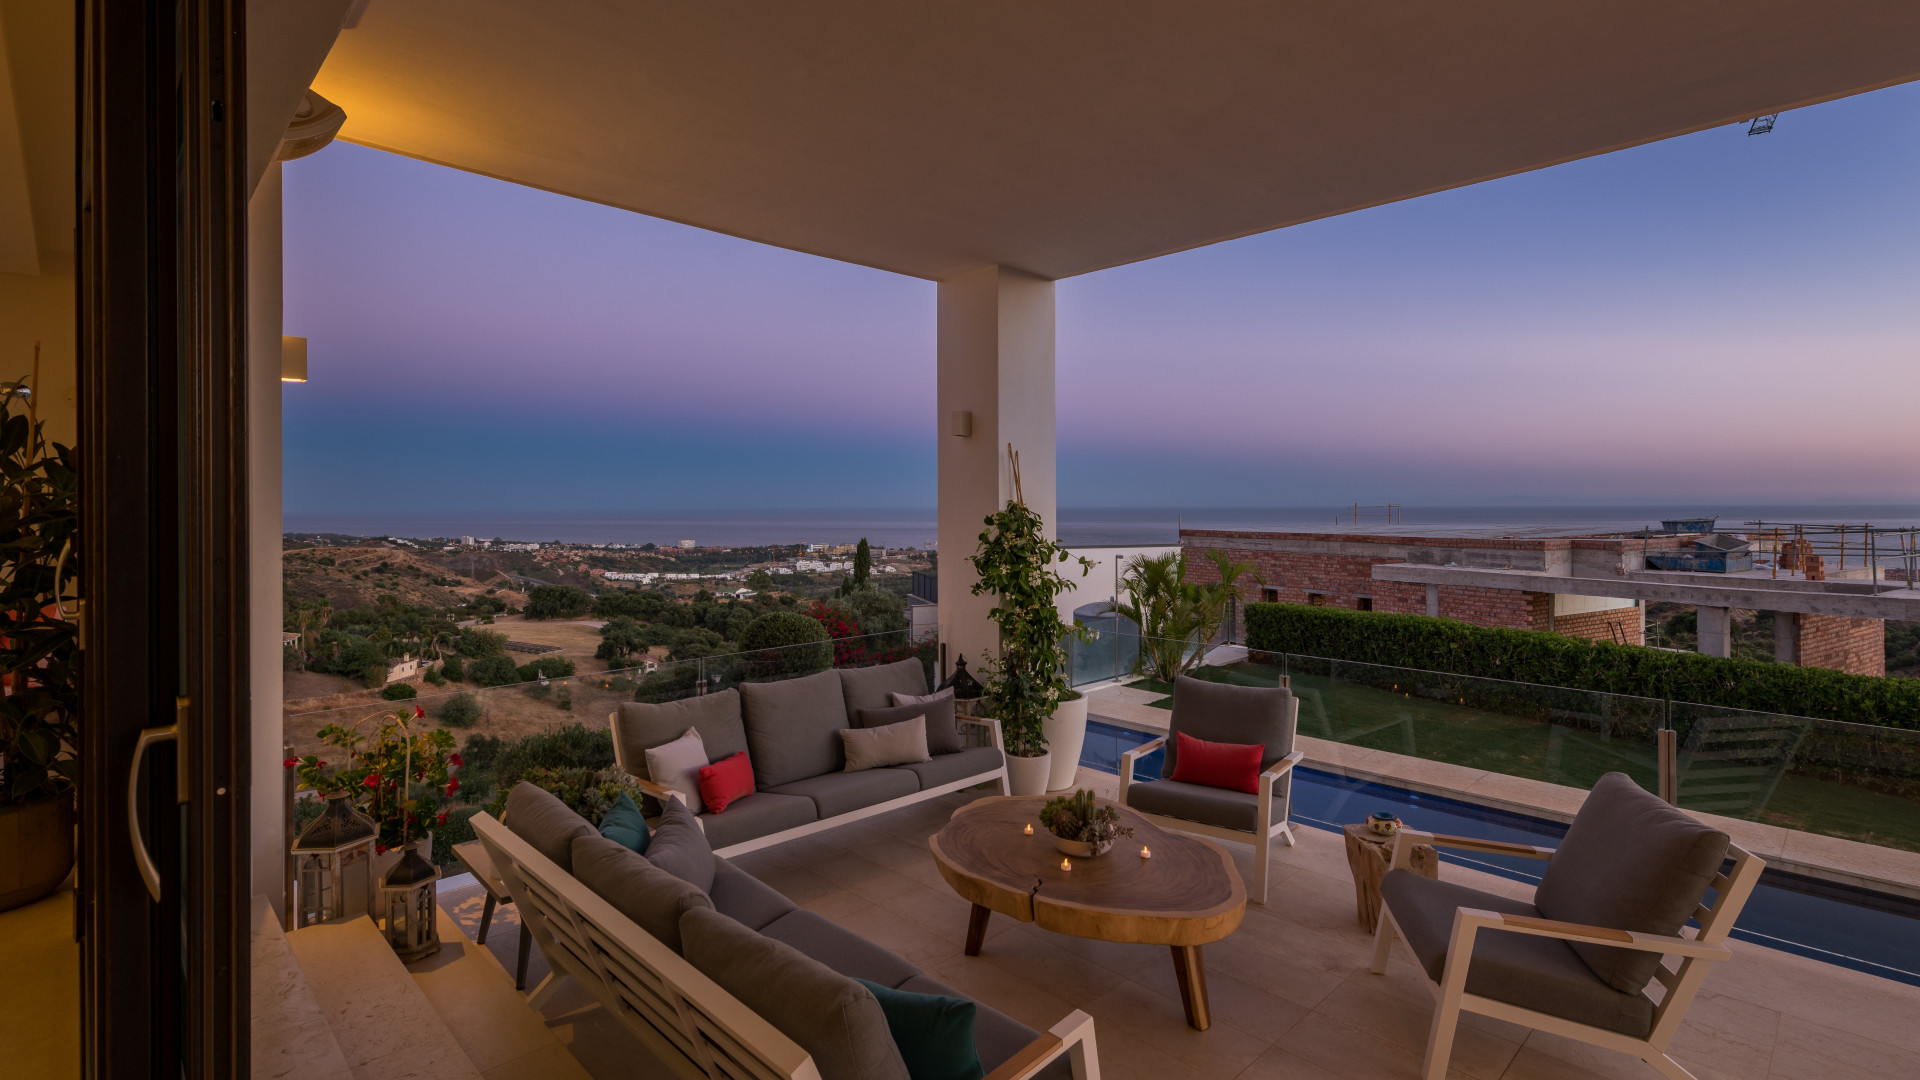 Villa moderna con vistas panorámicas al mar, amaneceres y puestas de sol espectaculares.